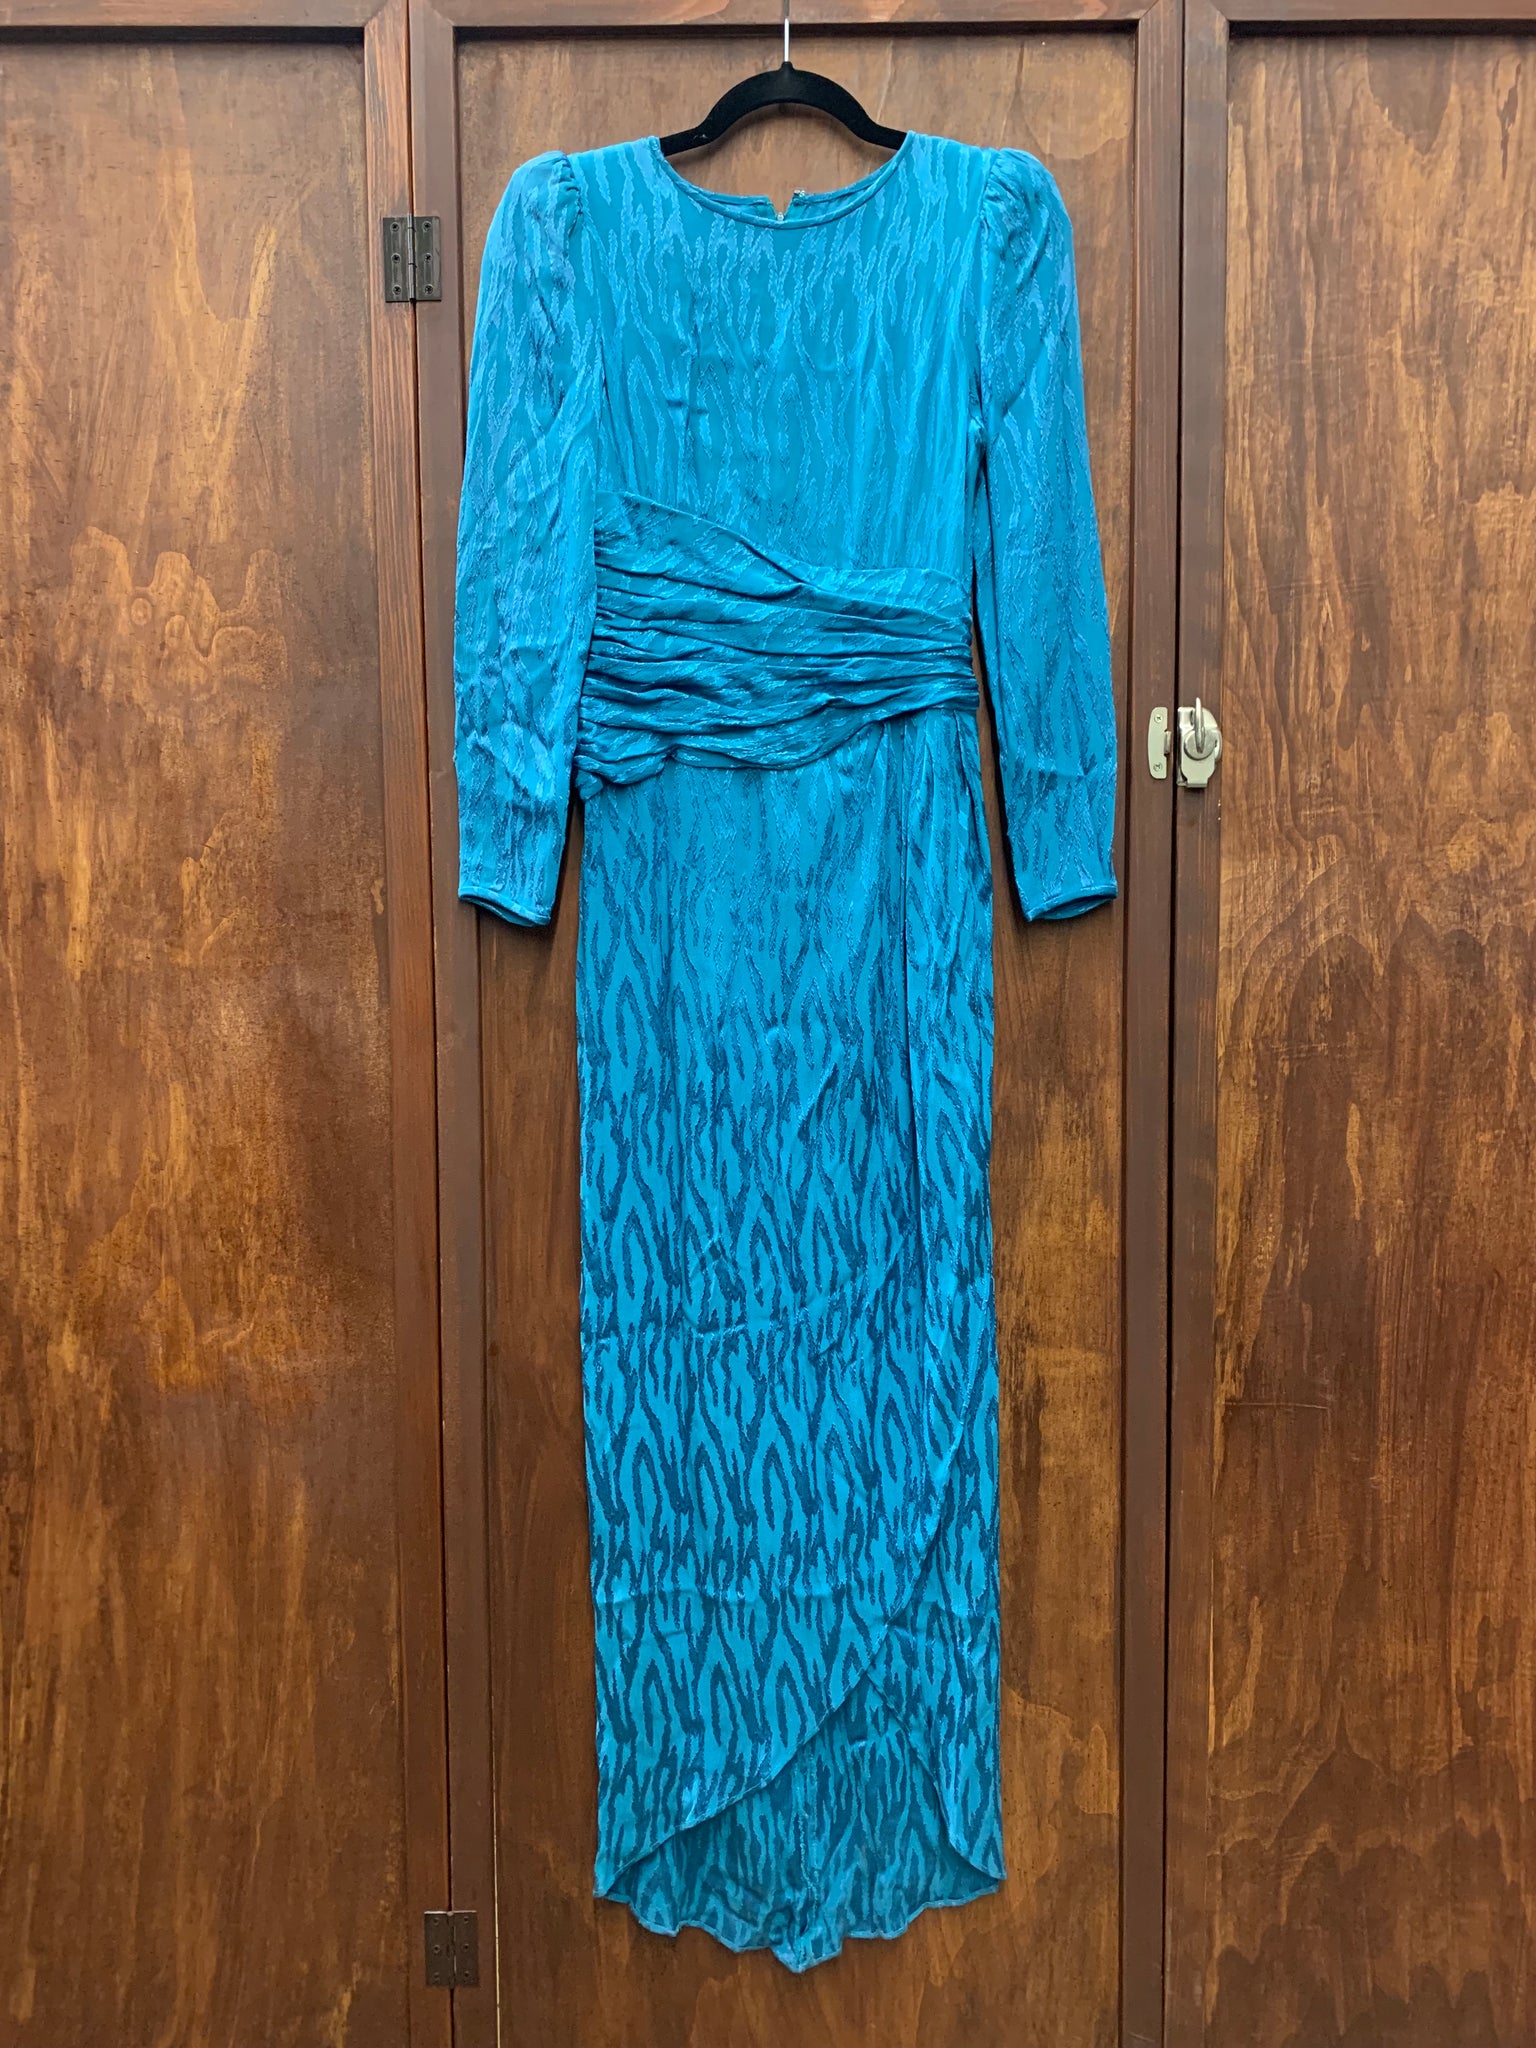 1990s DRESS- Teal zebra print jaquard l/s gown